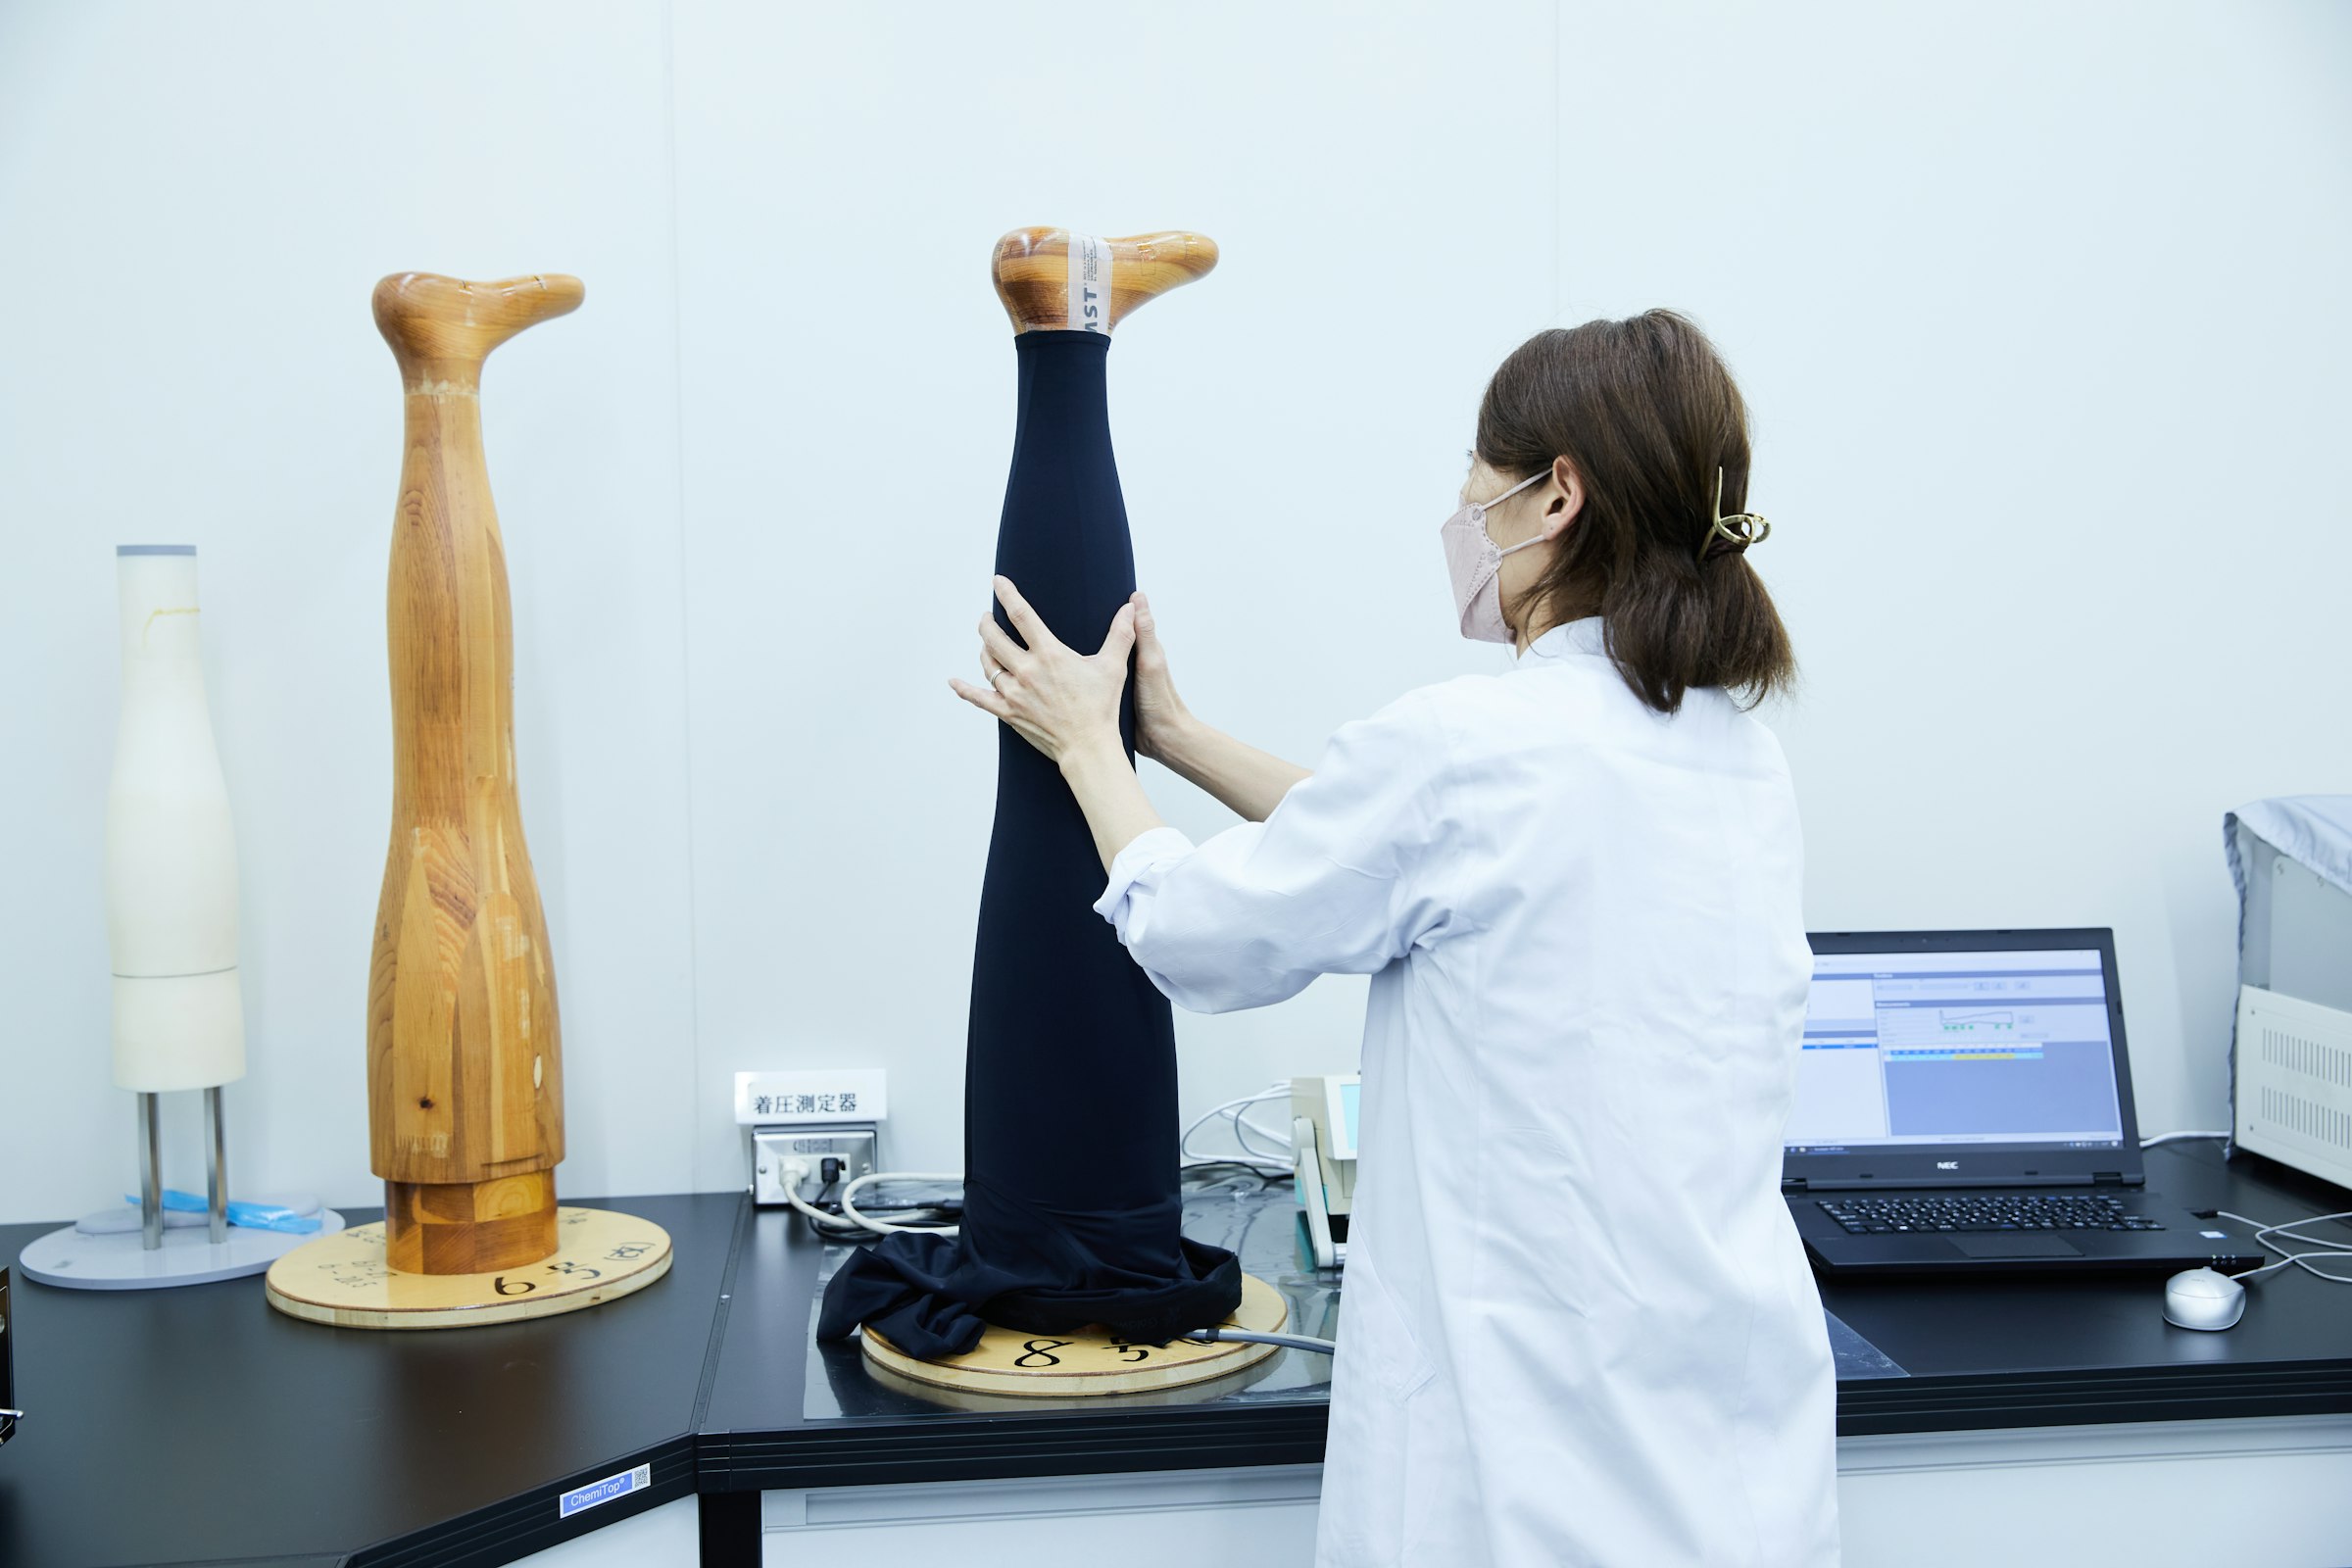 画像: 段階着圧を実現するための着圧試験機。脚型は日本人のデータをベースに作られている